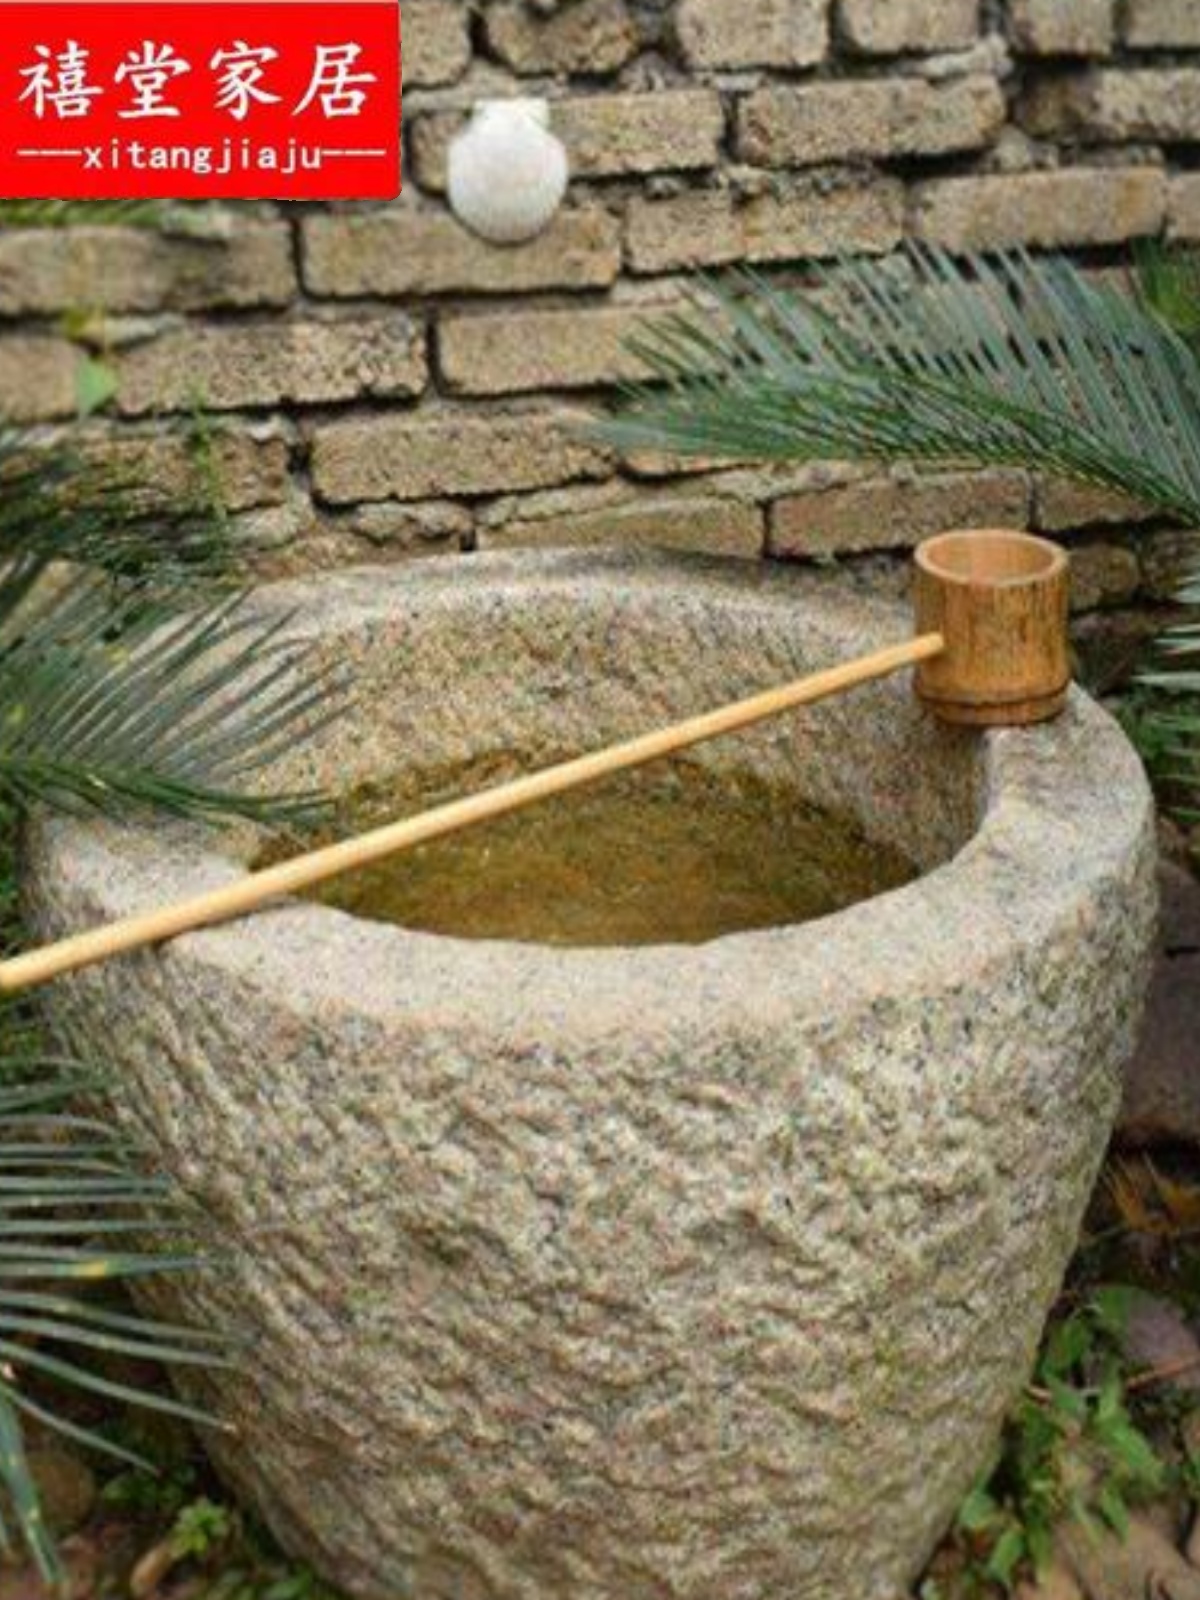 禧堂竹排水勺石槽鱼缸竹子流水摆件日式庭院景观竹流水器配件装饰